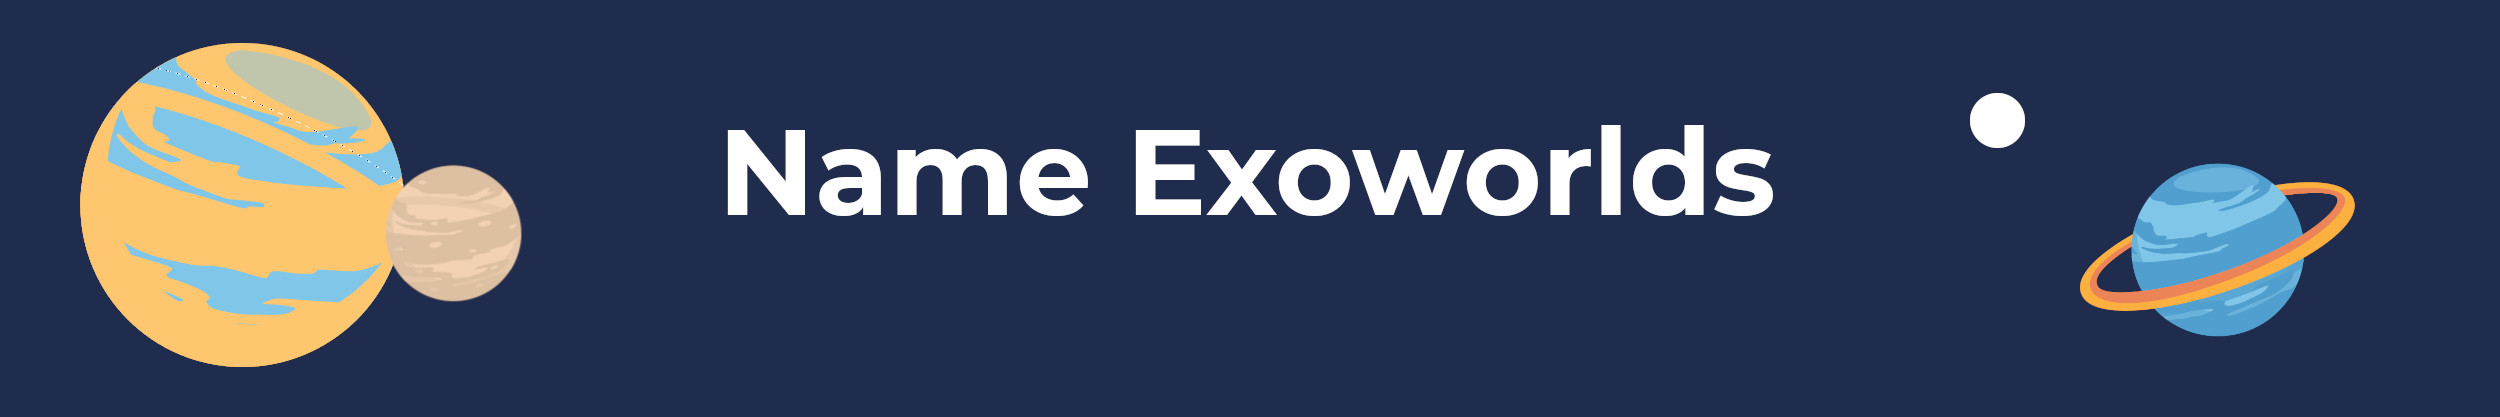 name_exoworlds2022-banner